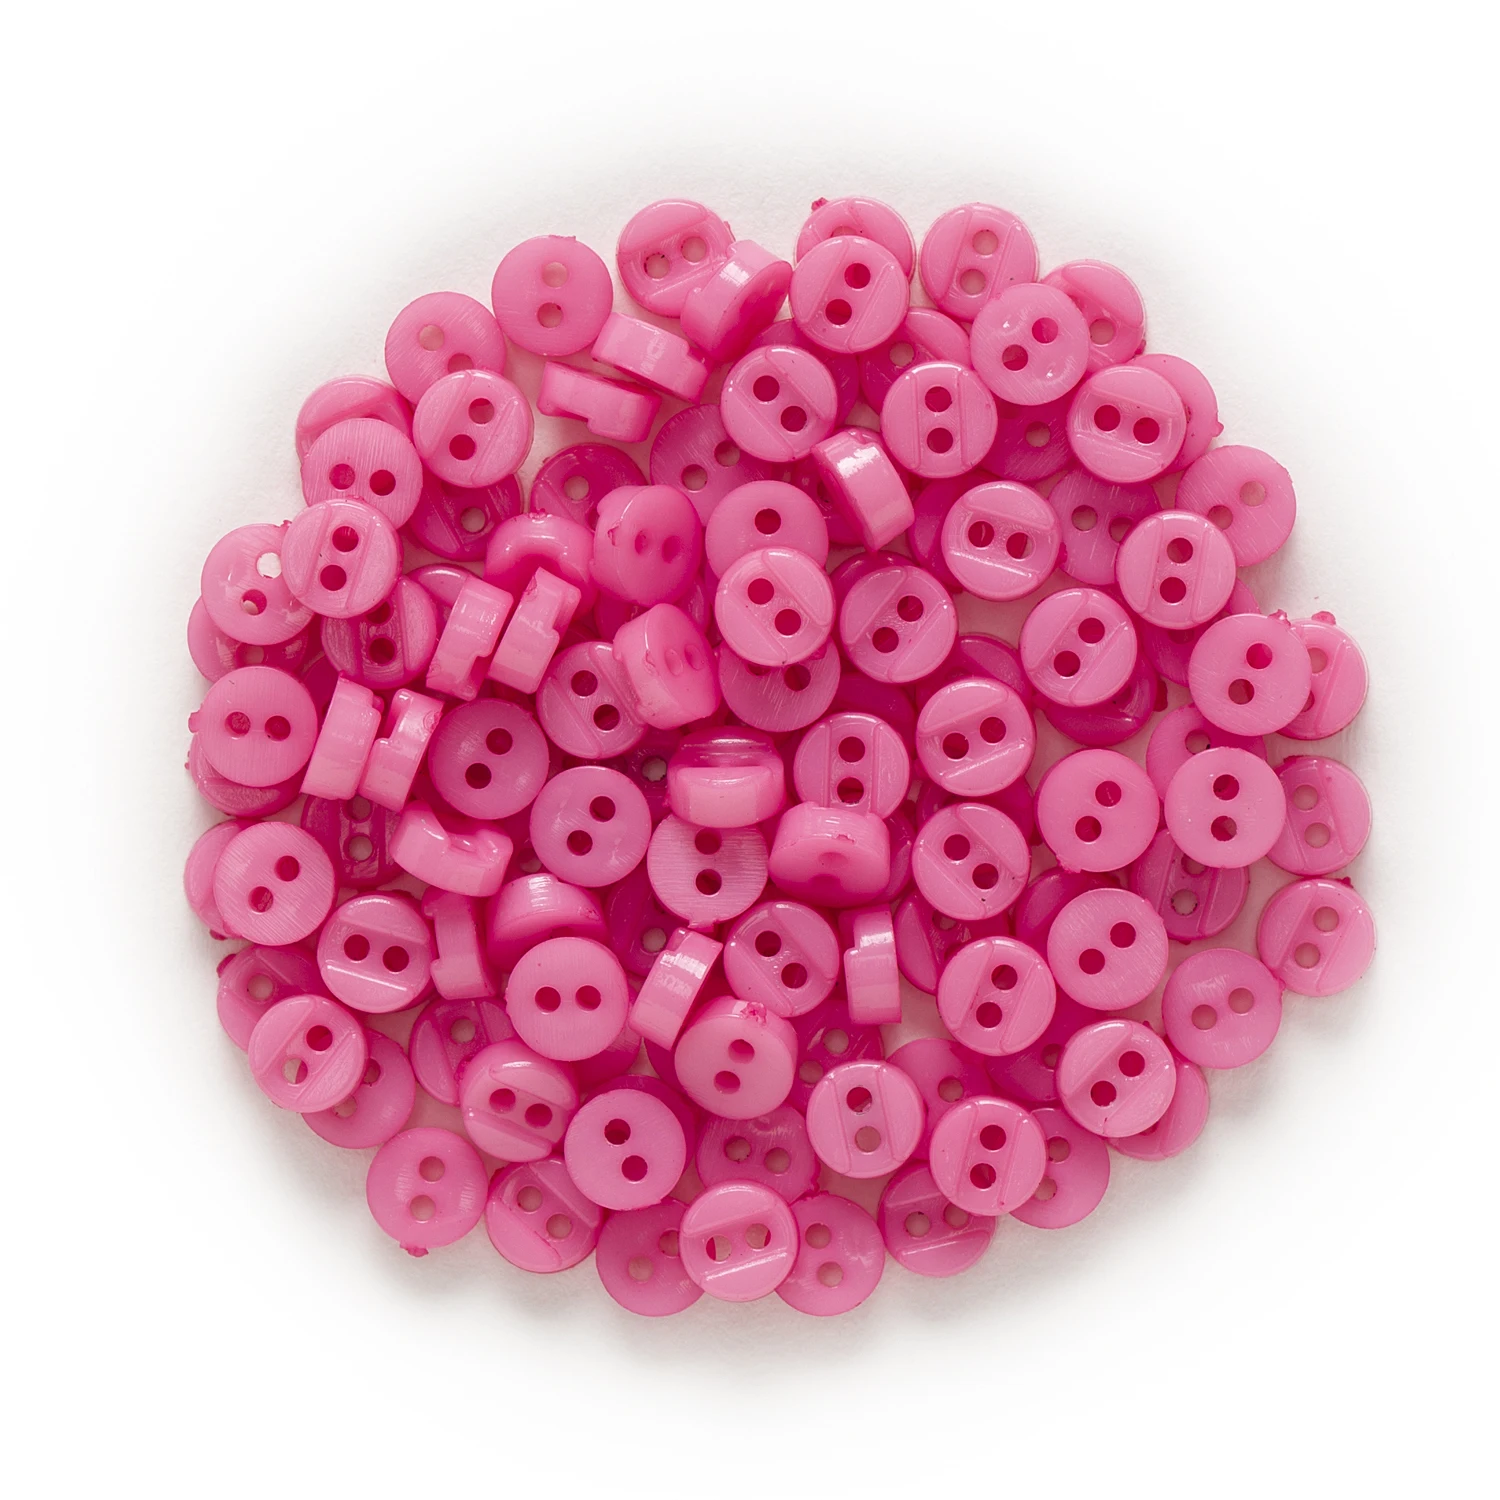 100 шт 6 мм многоцветные одноцветные 2 отверстия с зазором круглые полимерные кнопки для шитья скрапбукинга декор DIY - Цвет: Fuchsia